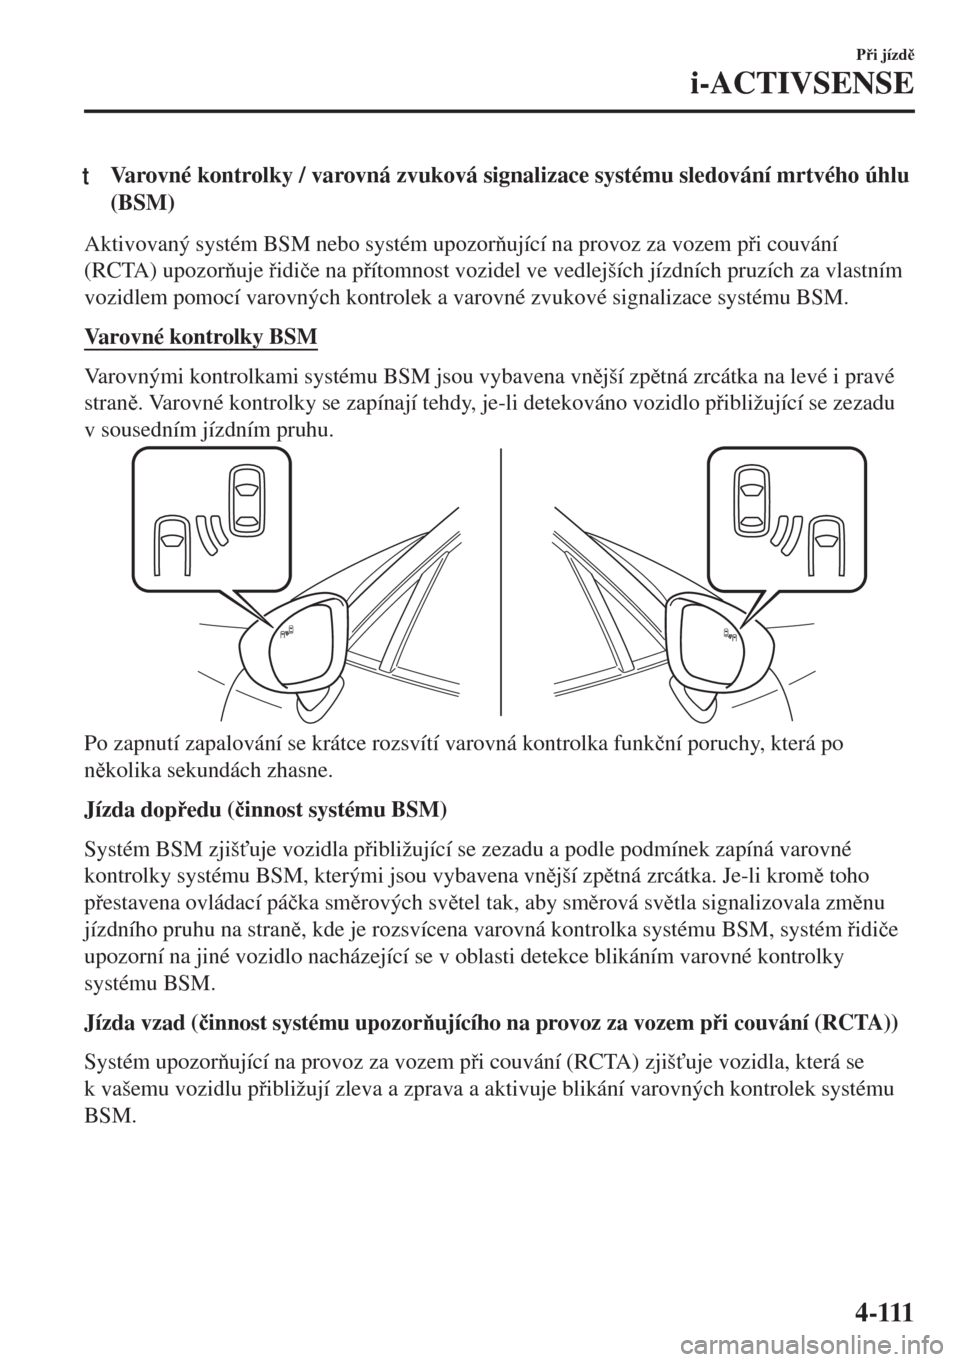 MAZDA MODEL MX-5 2018  Návod k obsluze (in Czech) tVarovné kontrolky / varovná zvuková signalizace systému sledování mrtvého úhlu
(BSM)
Aktivovaný systém BSM nebo systém upozorující na provoz za vozem pi couvání
(RCTA) upozoruje 